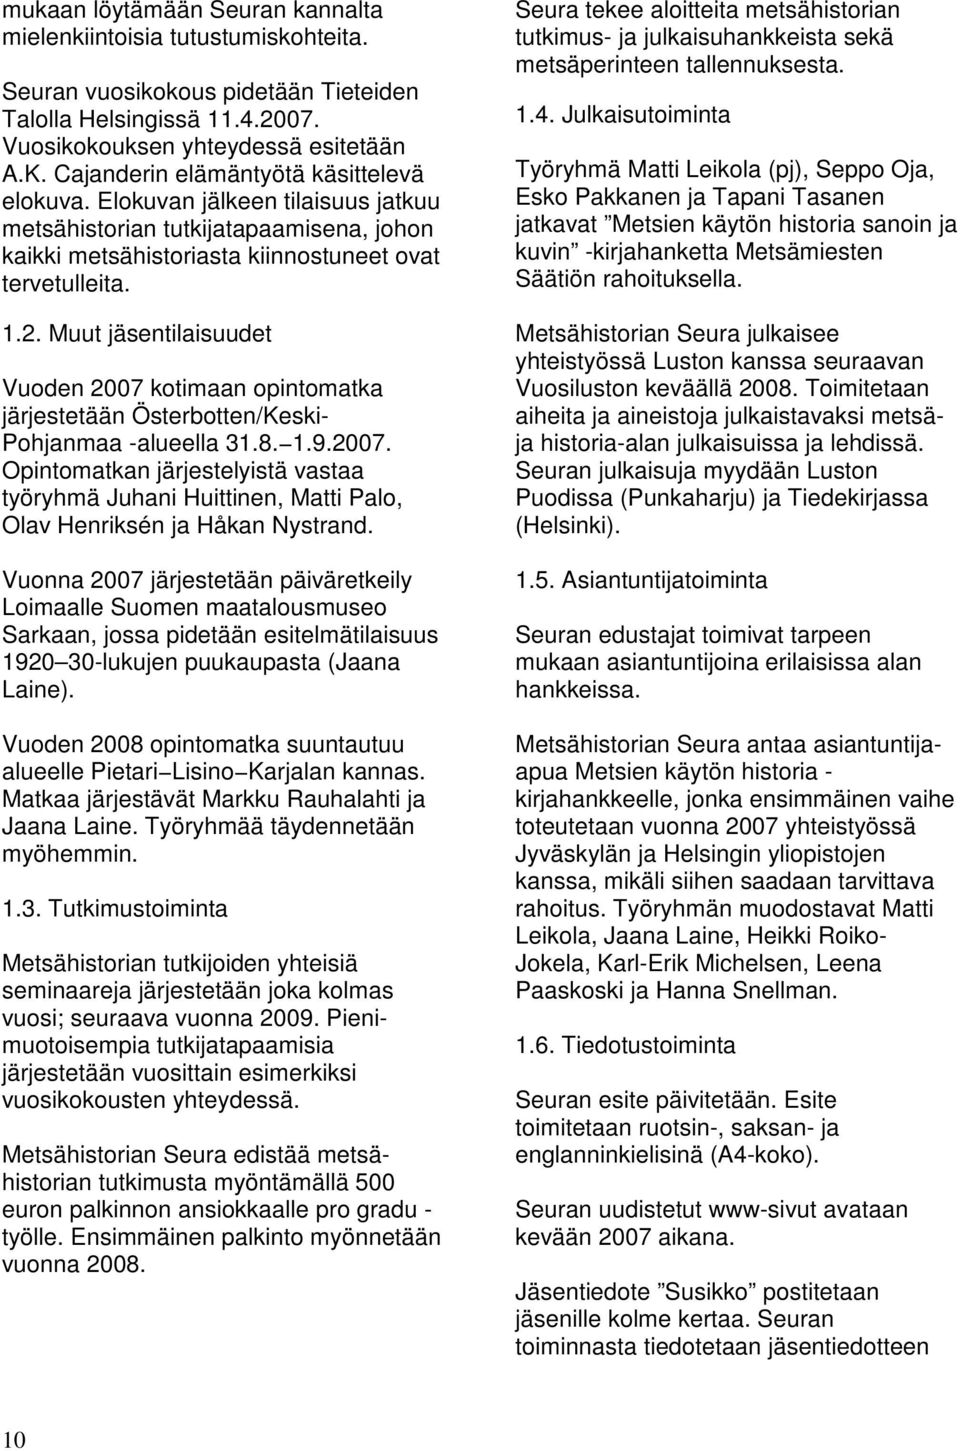 Muut jäsentilaisuudet Vuoden 2007 kotimaan opintomatka järjestetään Österbotten/Keski- Pohjanmaa -alueella 31.8. 1.9.2007. Opintomatkan järjestelyistä vastaa työryhmä Juhani Huittinen, Matti Palo, Olav Henriksén ja Håkan Nystrand.